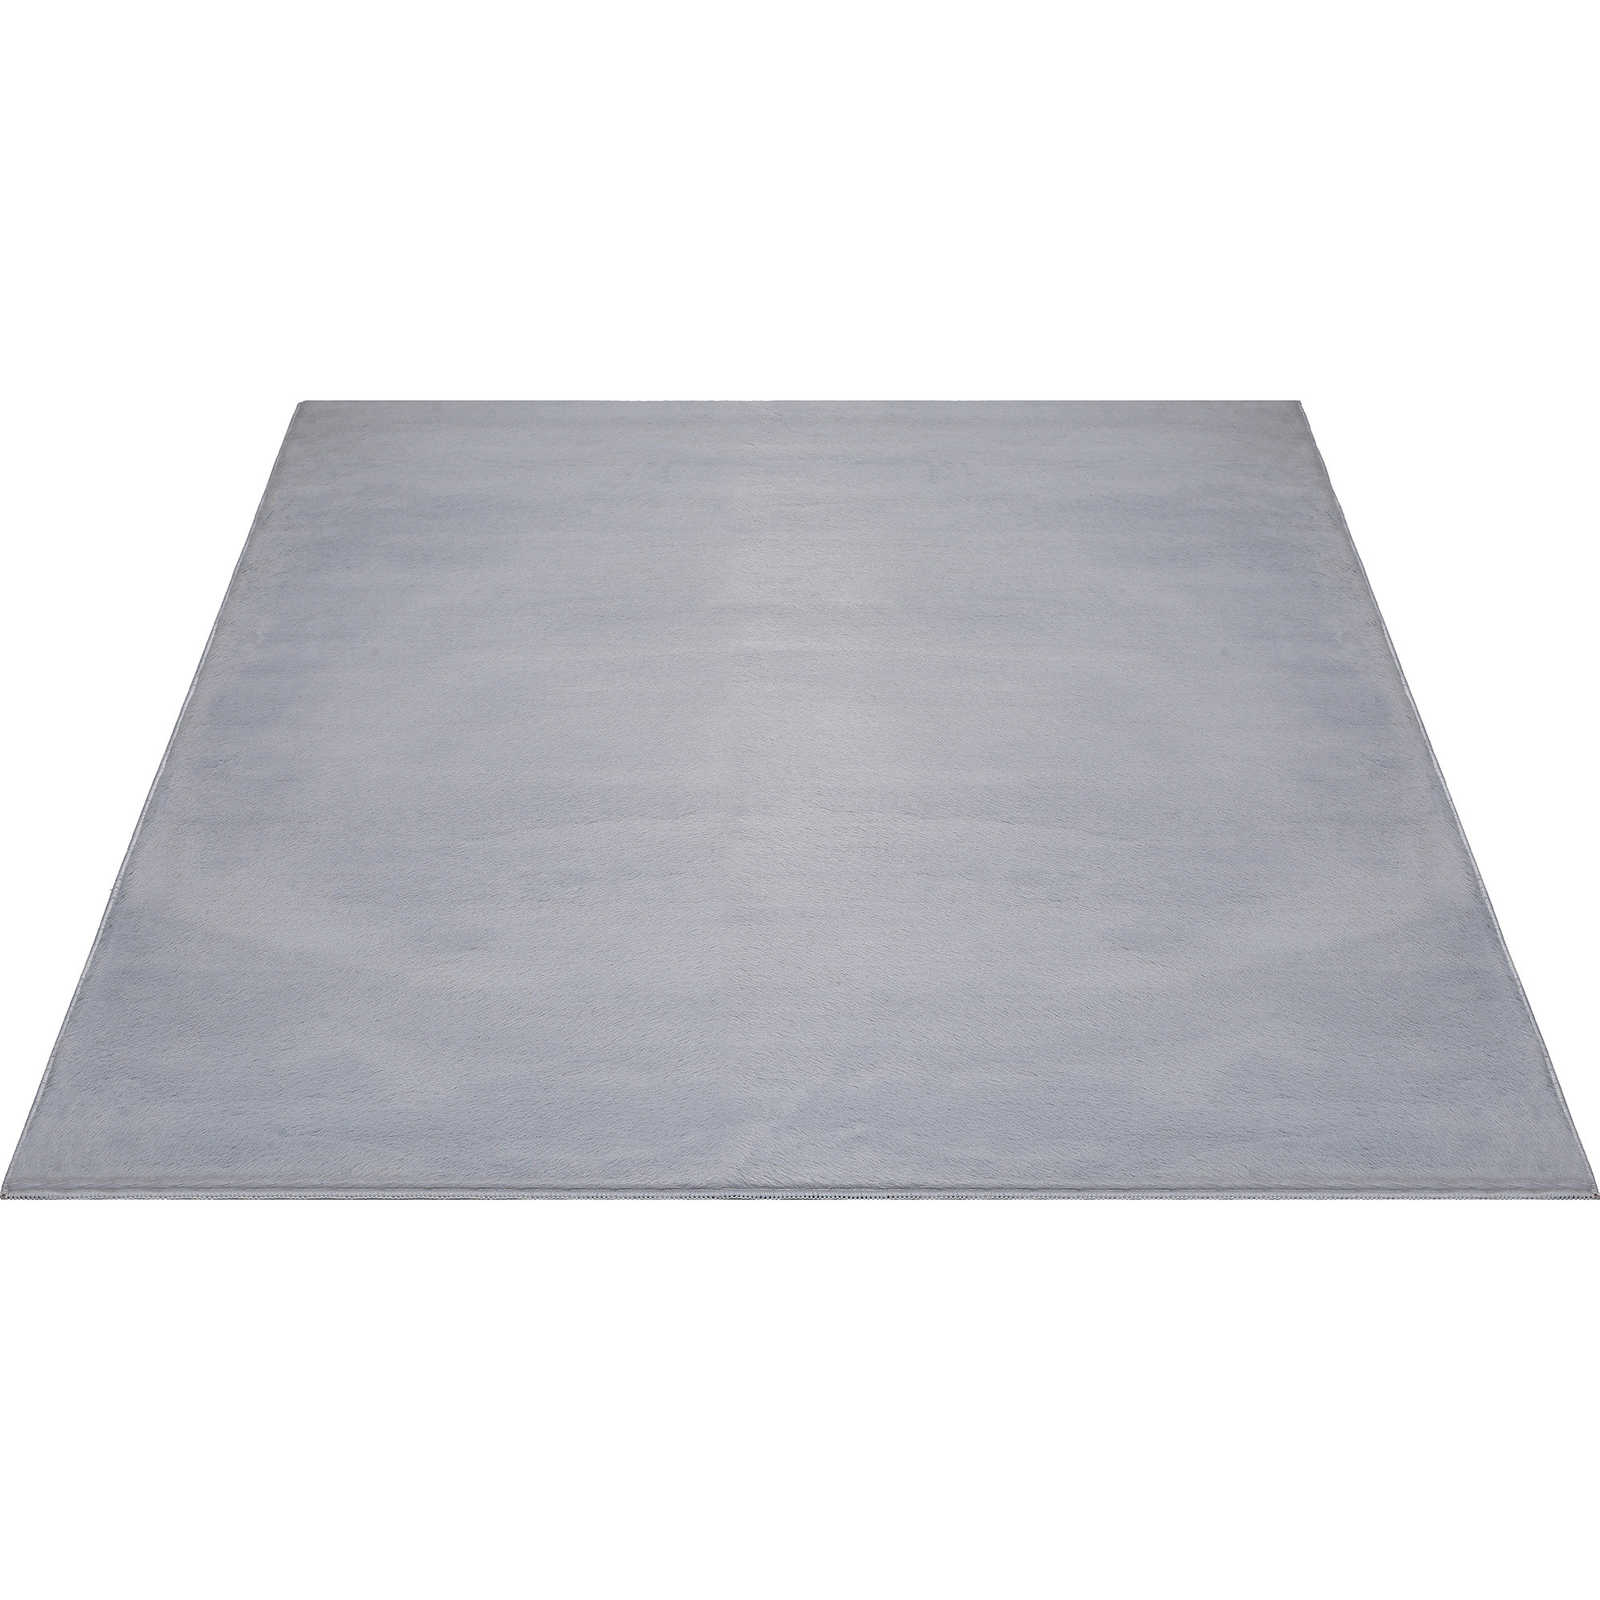 Cómoda alfombra de pelo alto en gris suave - 340 x 240 cm
